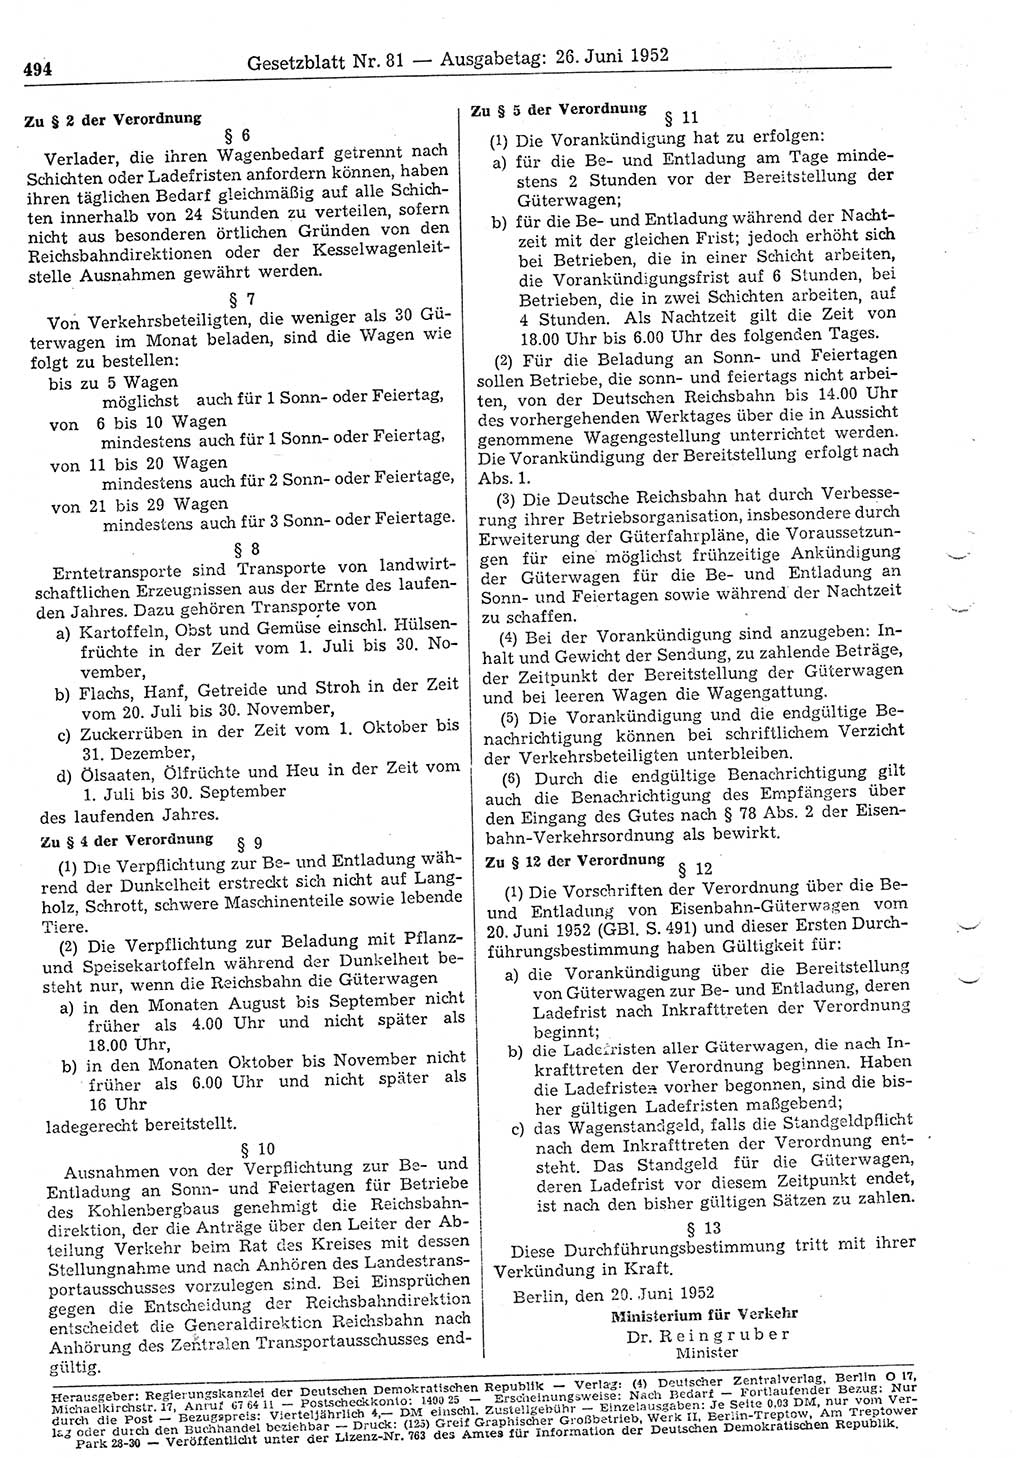 Gesetzblatt (GBl.) der Deutschen Demokratischen Republik (DDR) 1952, Seite 494 (GBl. DDR 1952, S. 494)